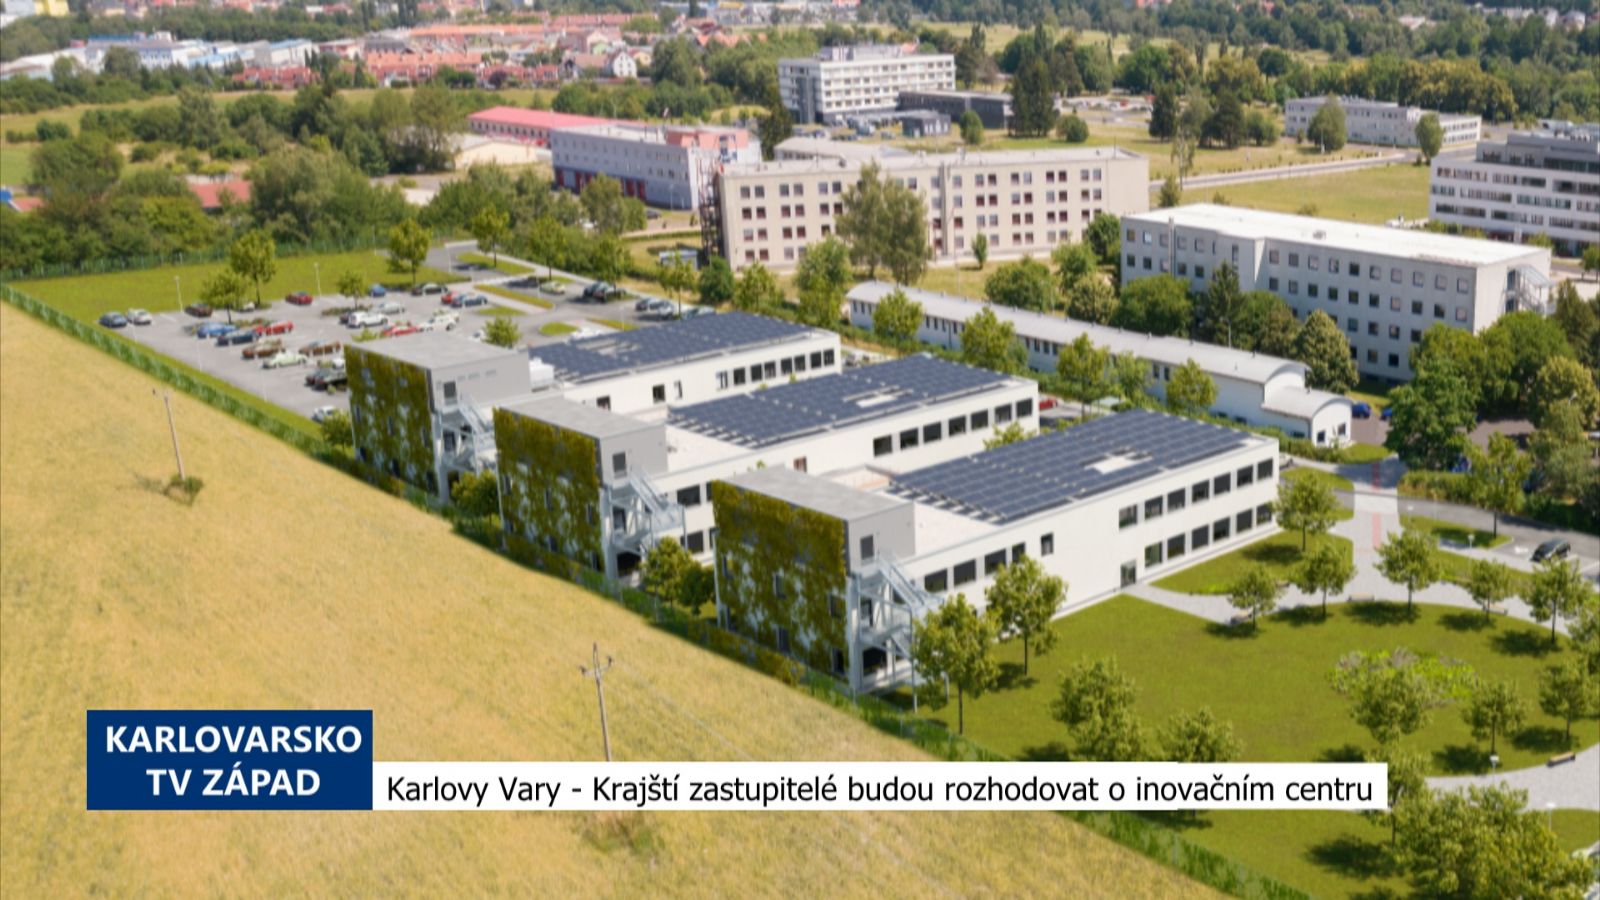 Karlovy Vary: Krajští zastupitelé budou rozhodovat o inovačním centru (TV Západ)